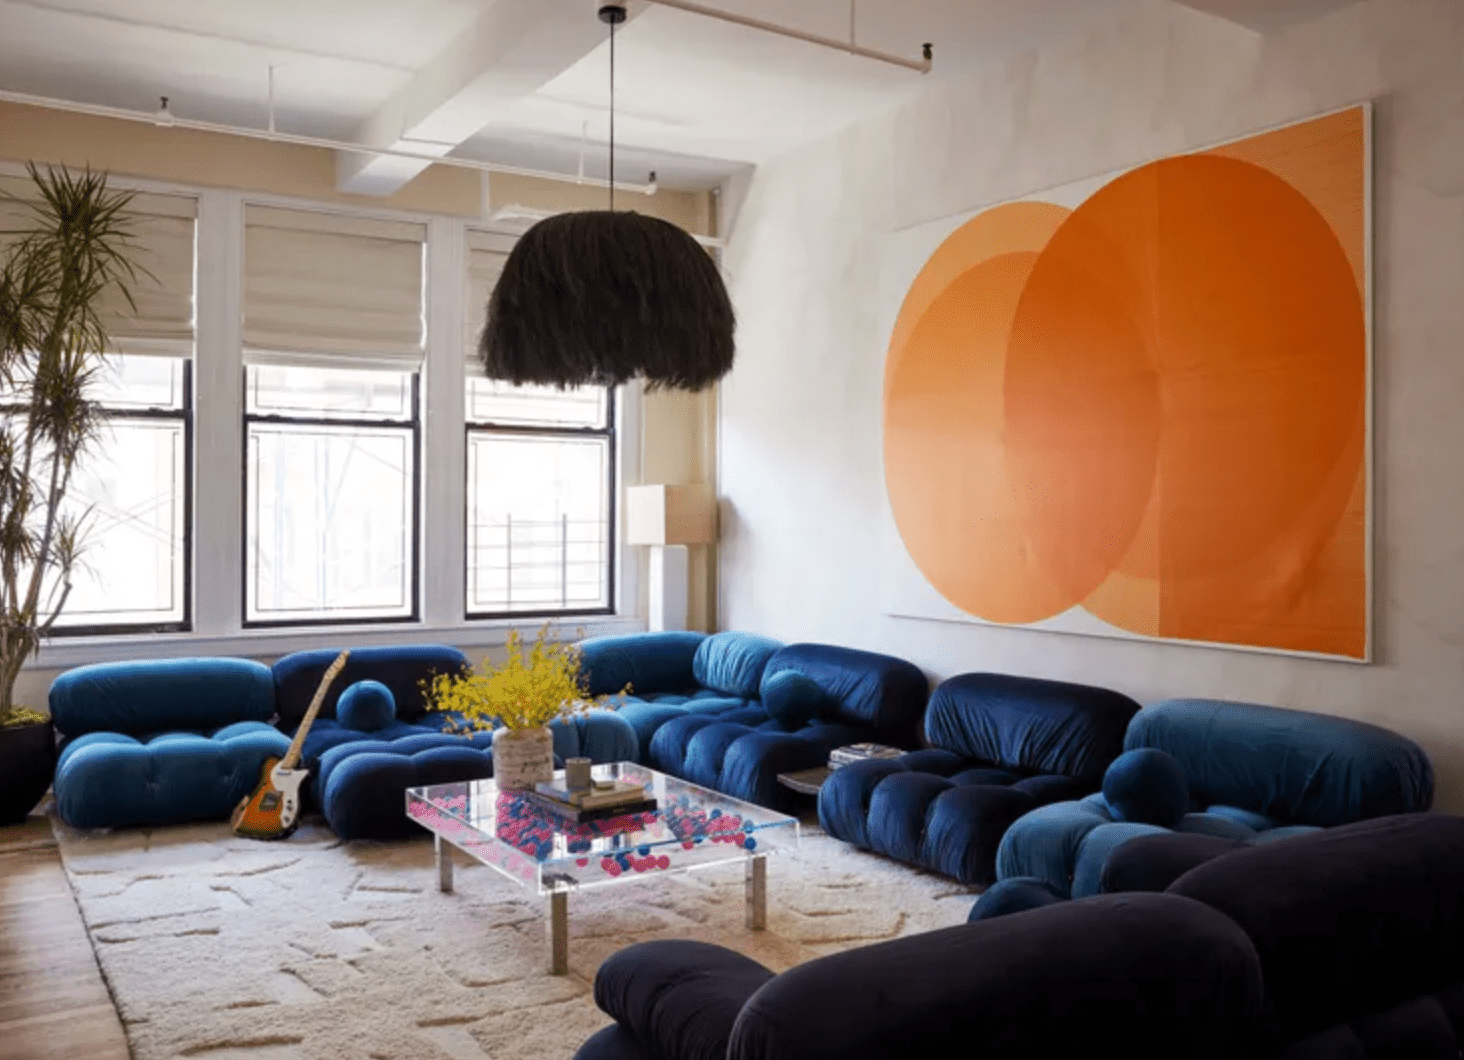 Canapé bleu royal avec art orange